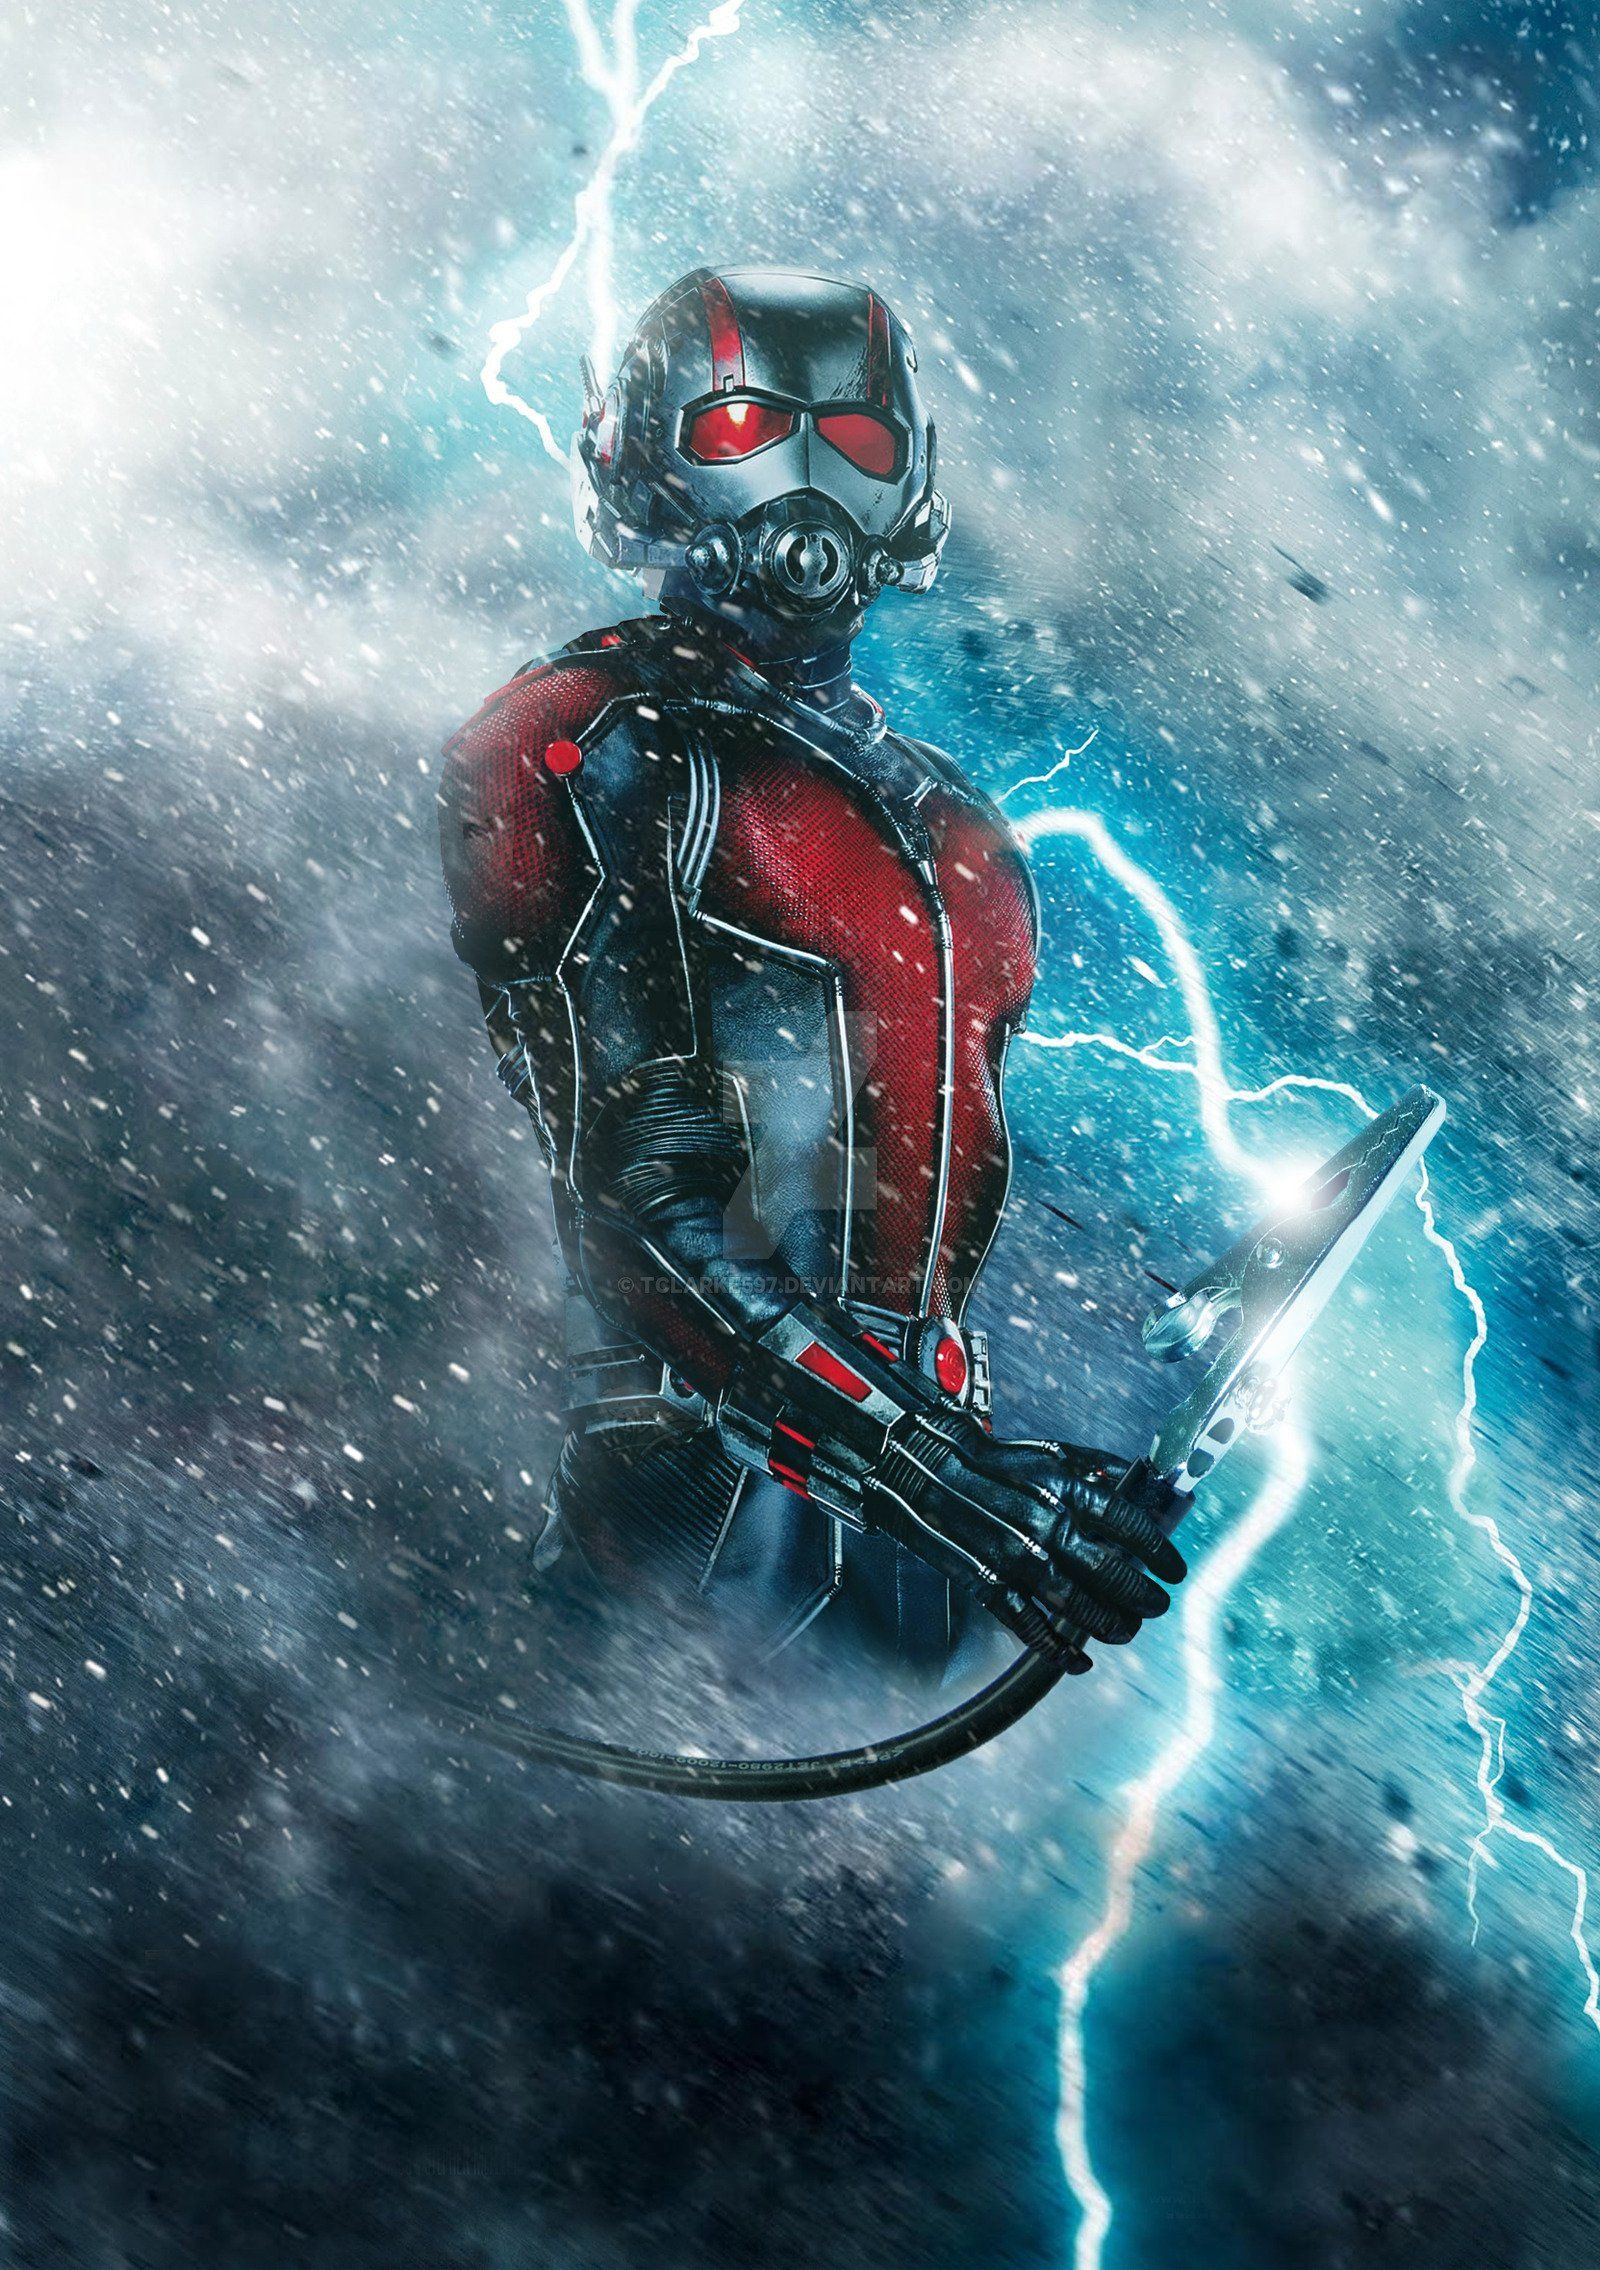 26+] Ant-Man Marvel Wallpapers - WallpaperSafari